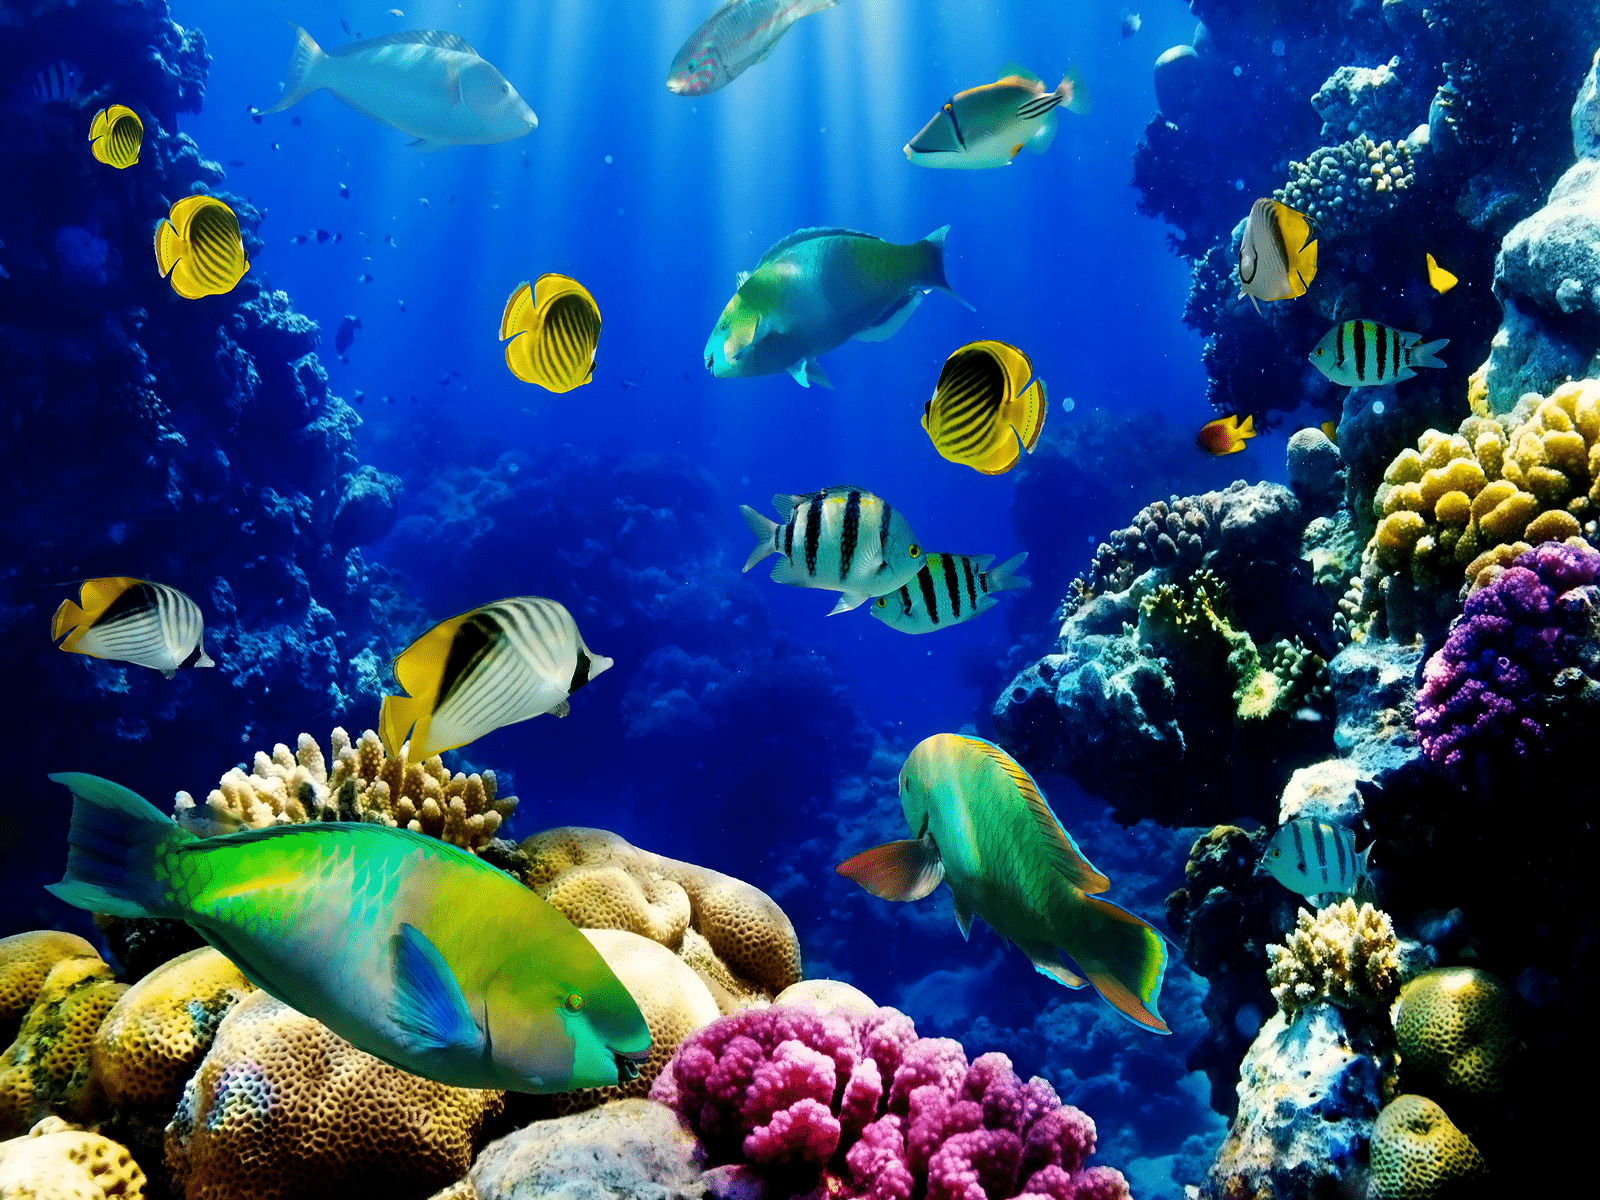 aquarium screensaver free download full version